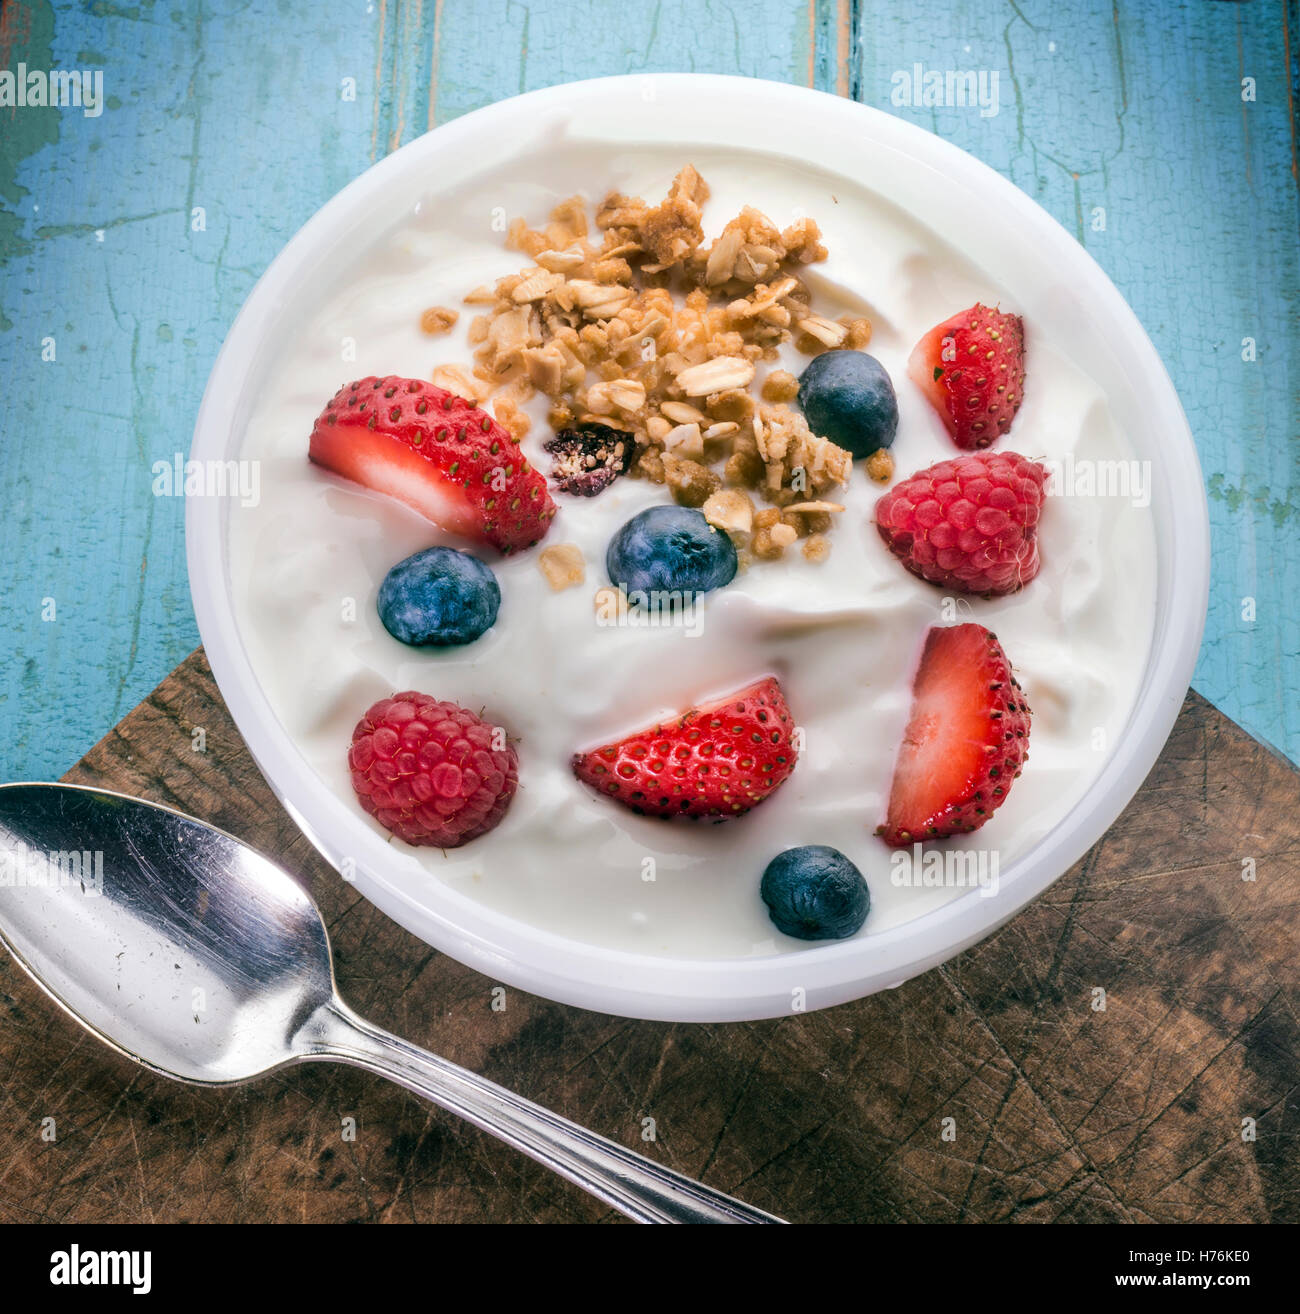 yogurt berries Stock Photo